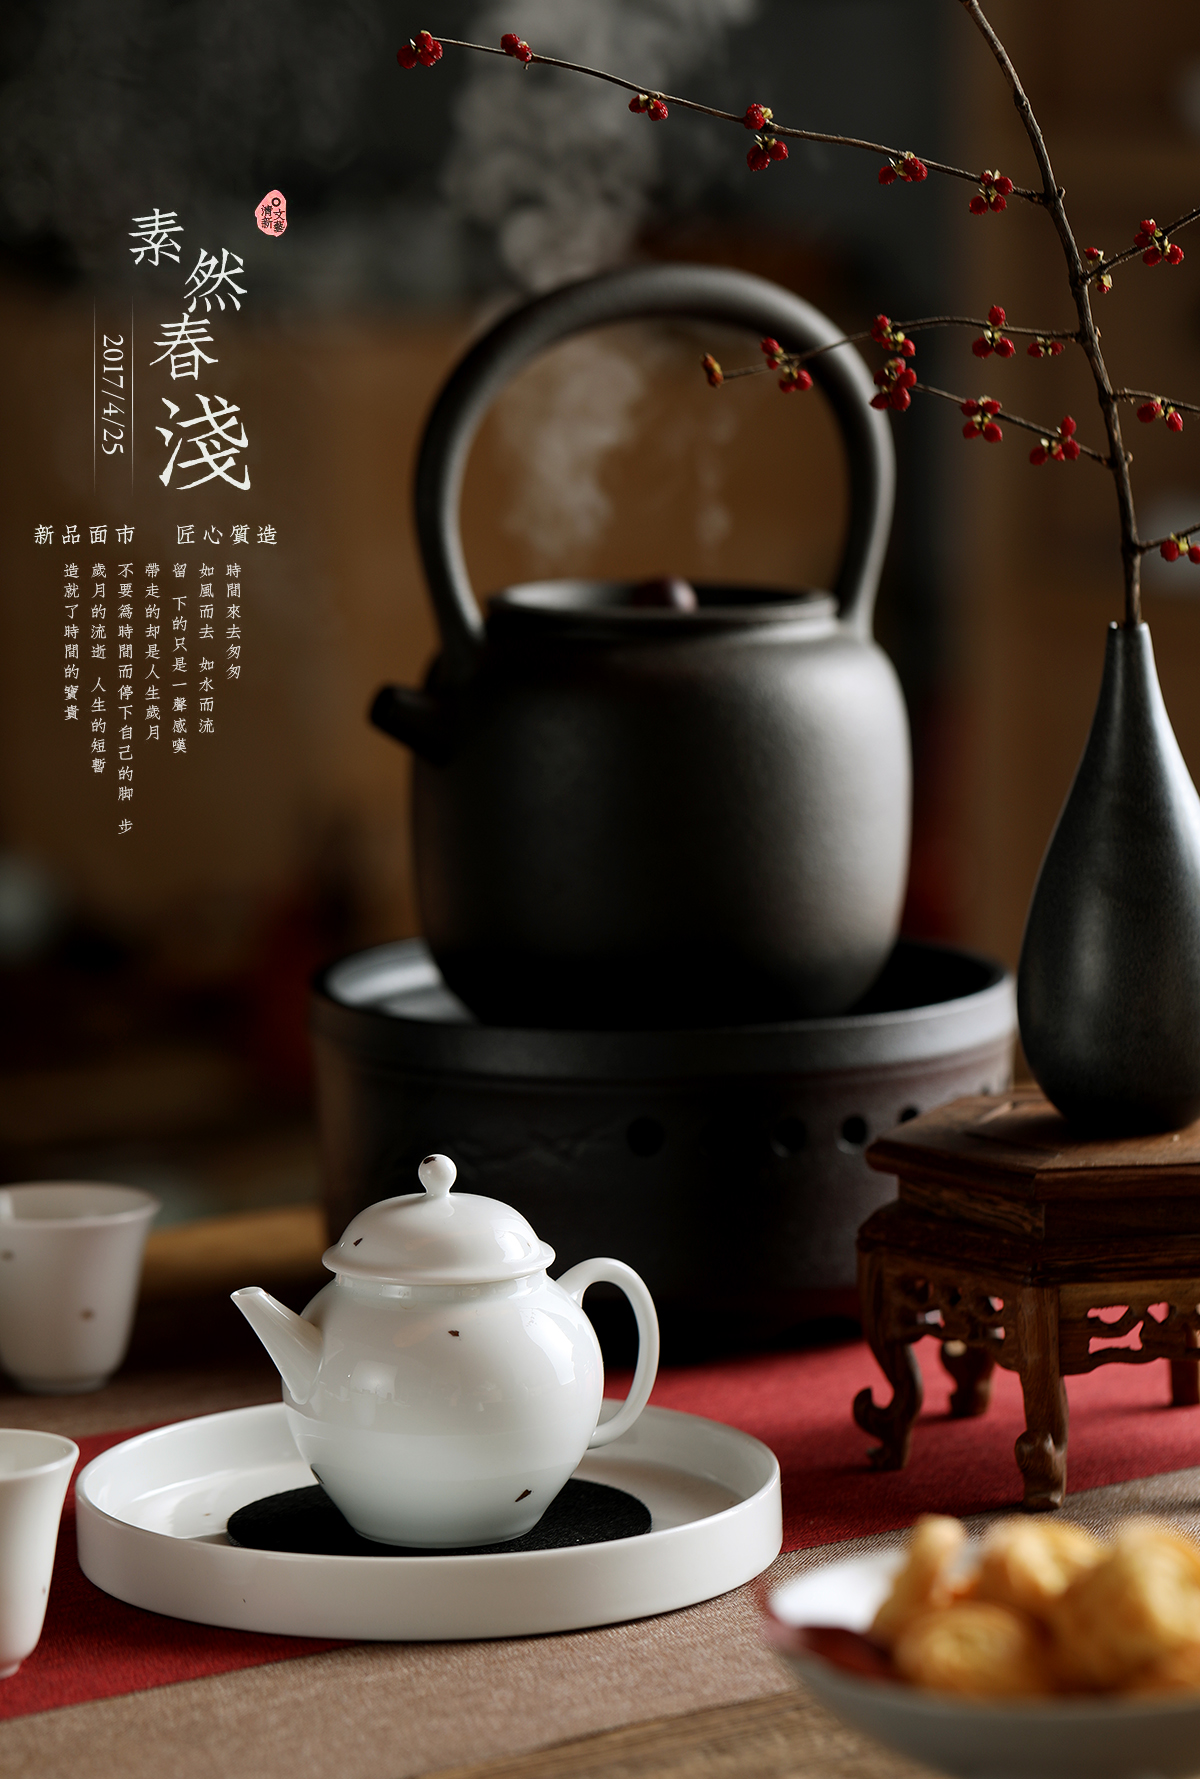 世界杯开户“陶瓷茶具创作展2013””在港揭幕(图1)